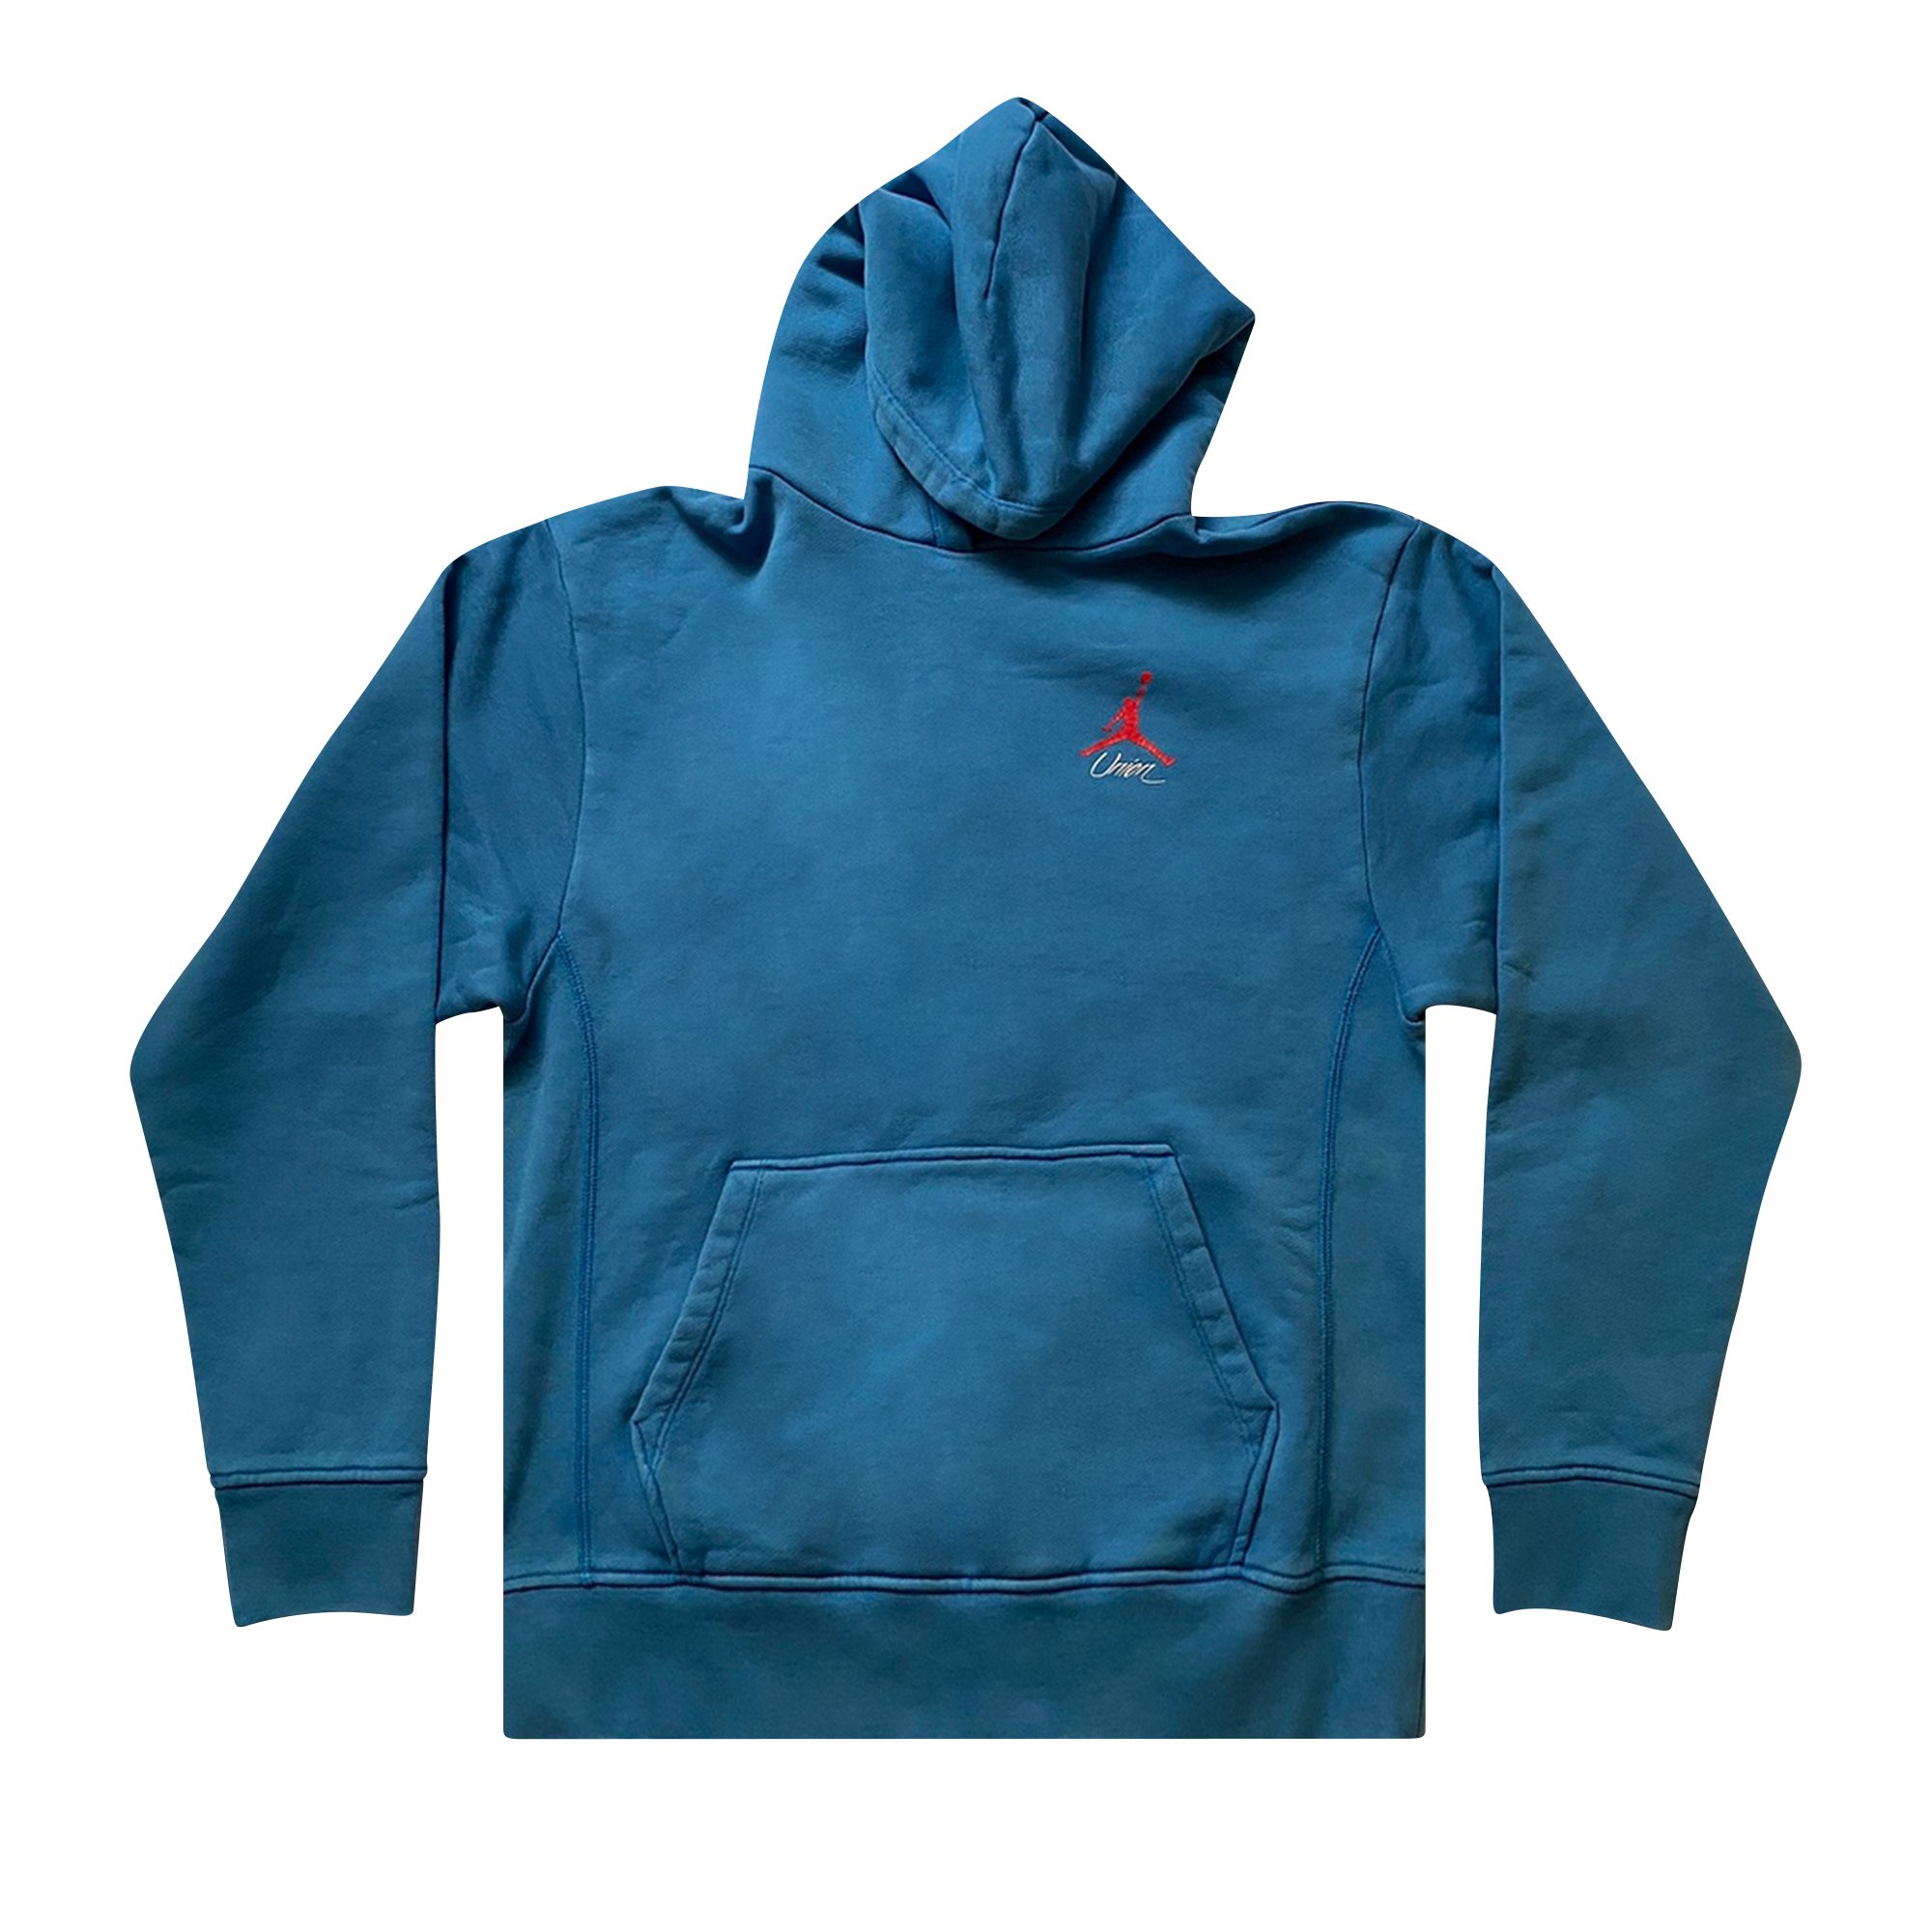 売れ筋 high flying hooded UNION sweatshirt パーカー